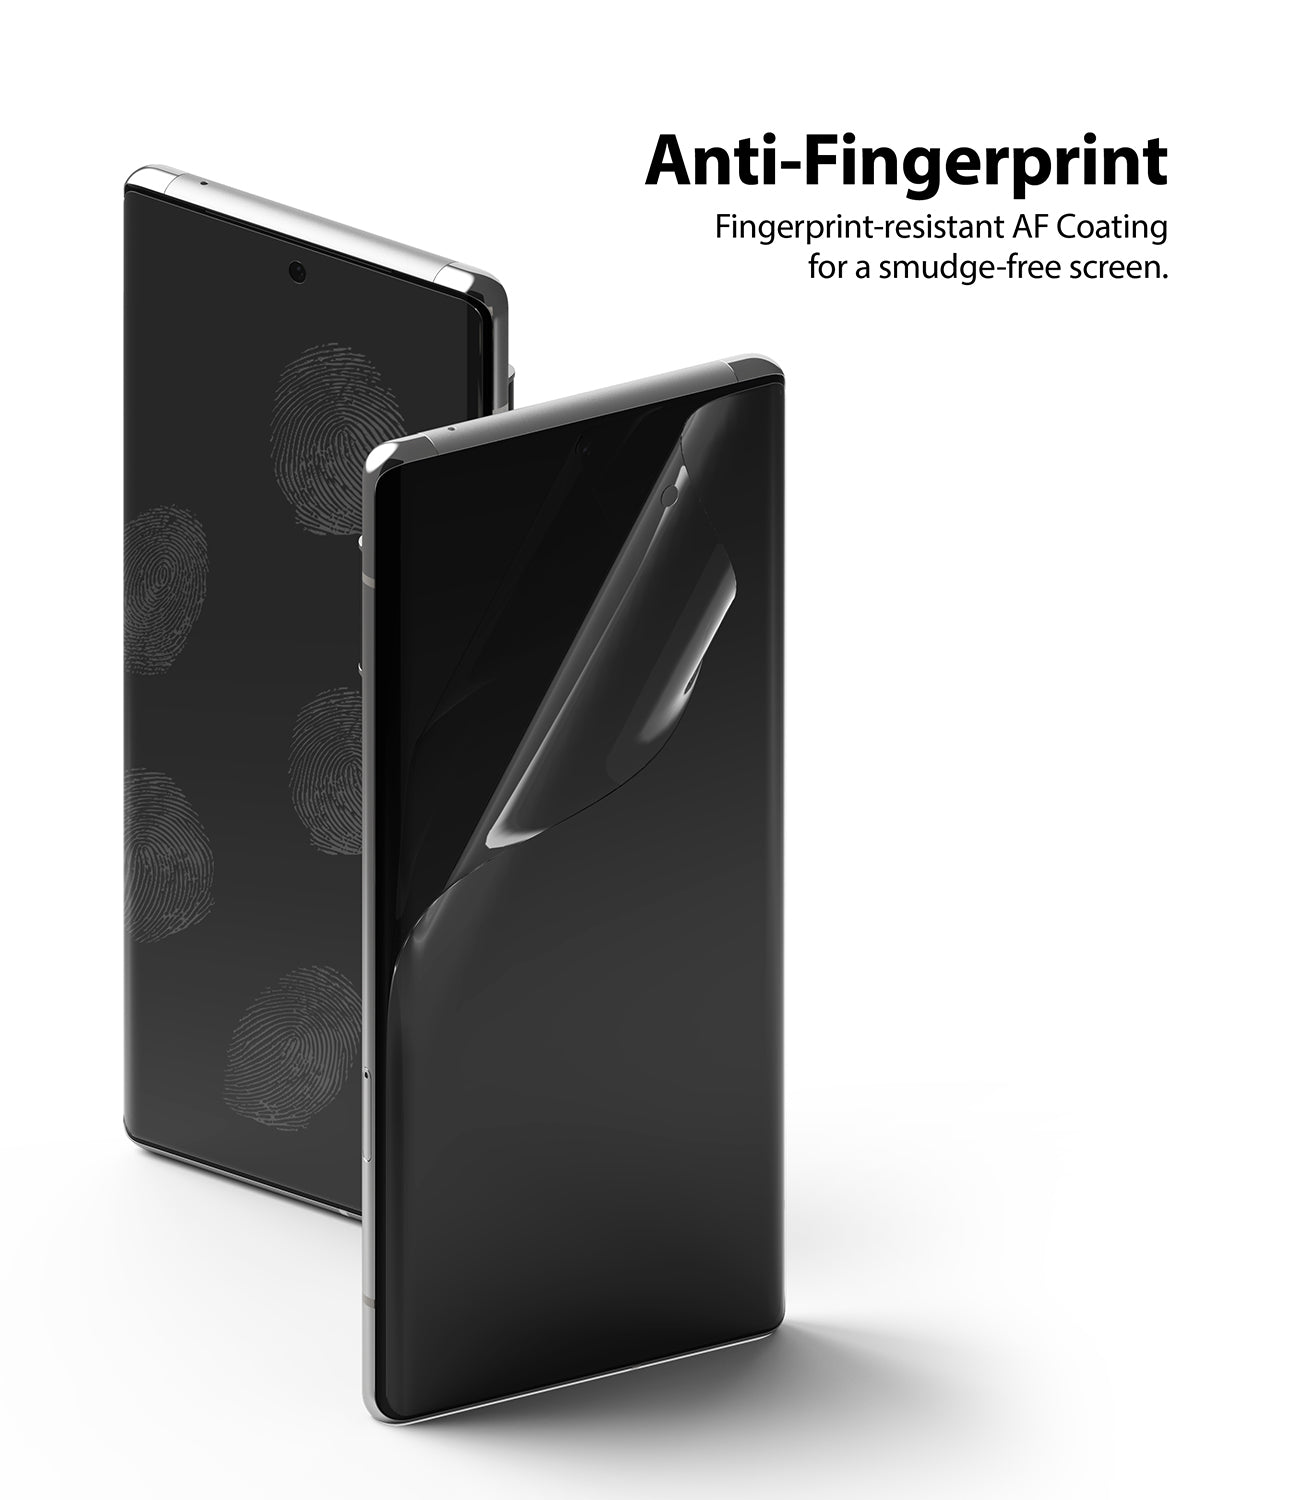 Anti-fingerprint AF coating